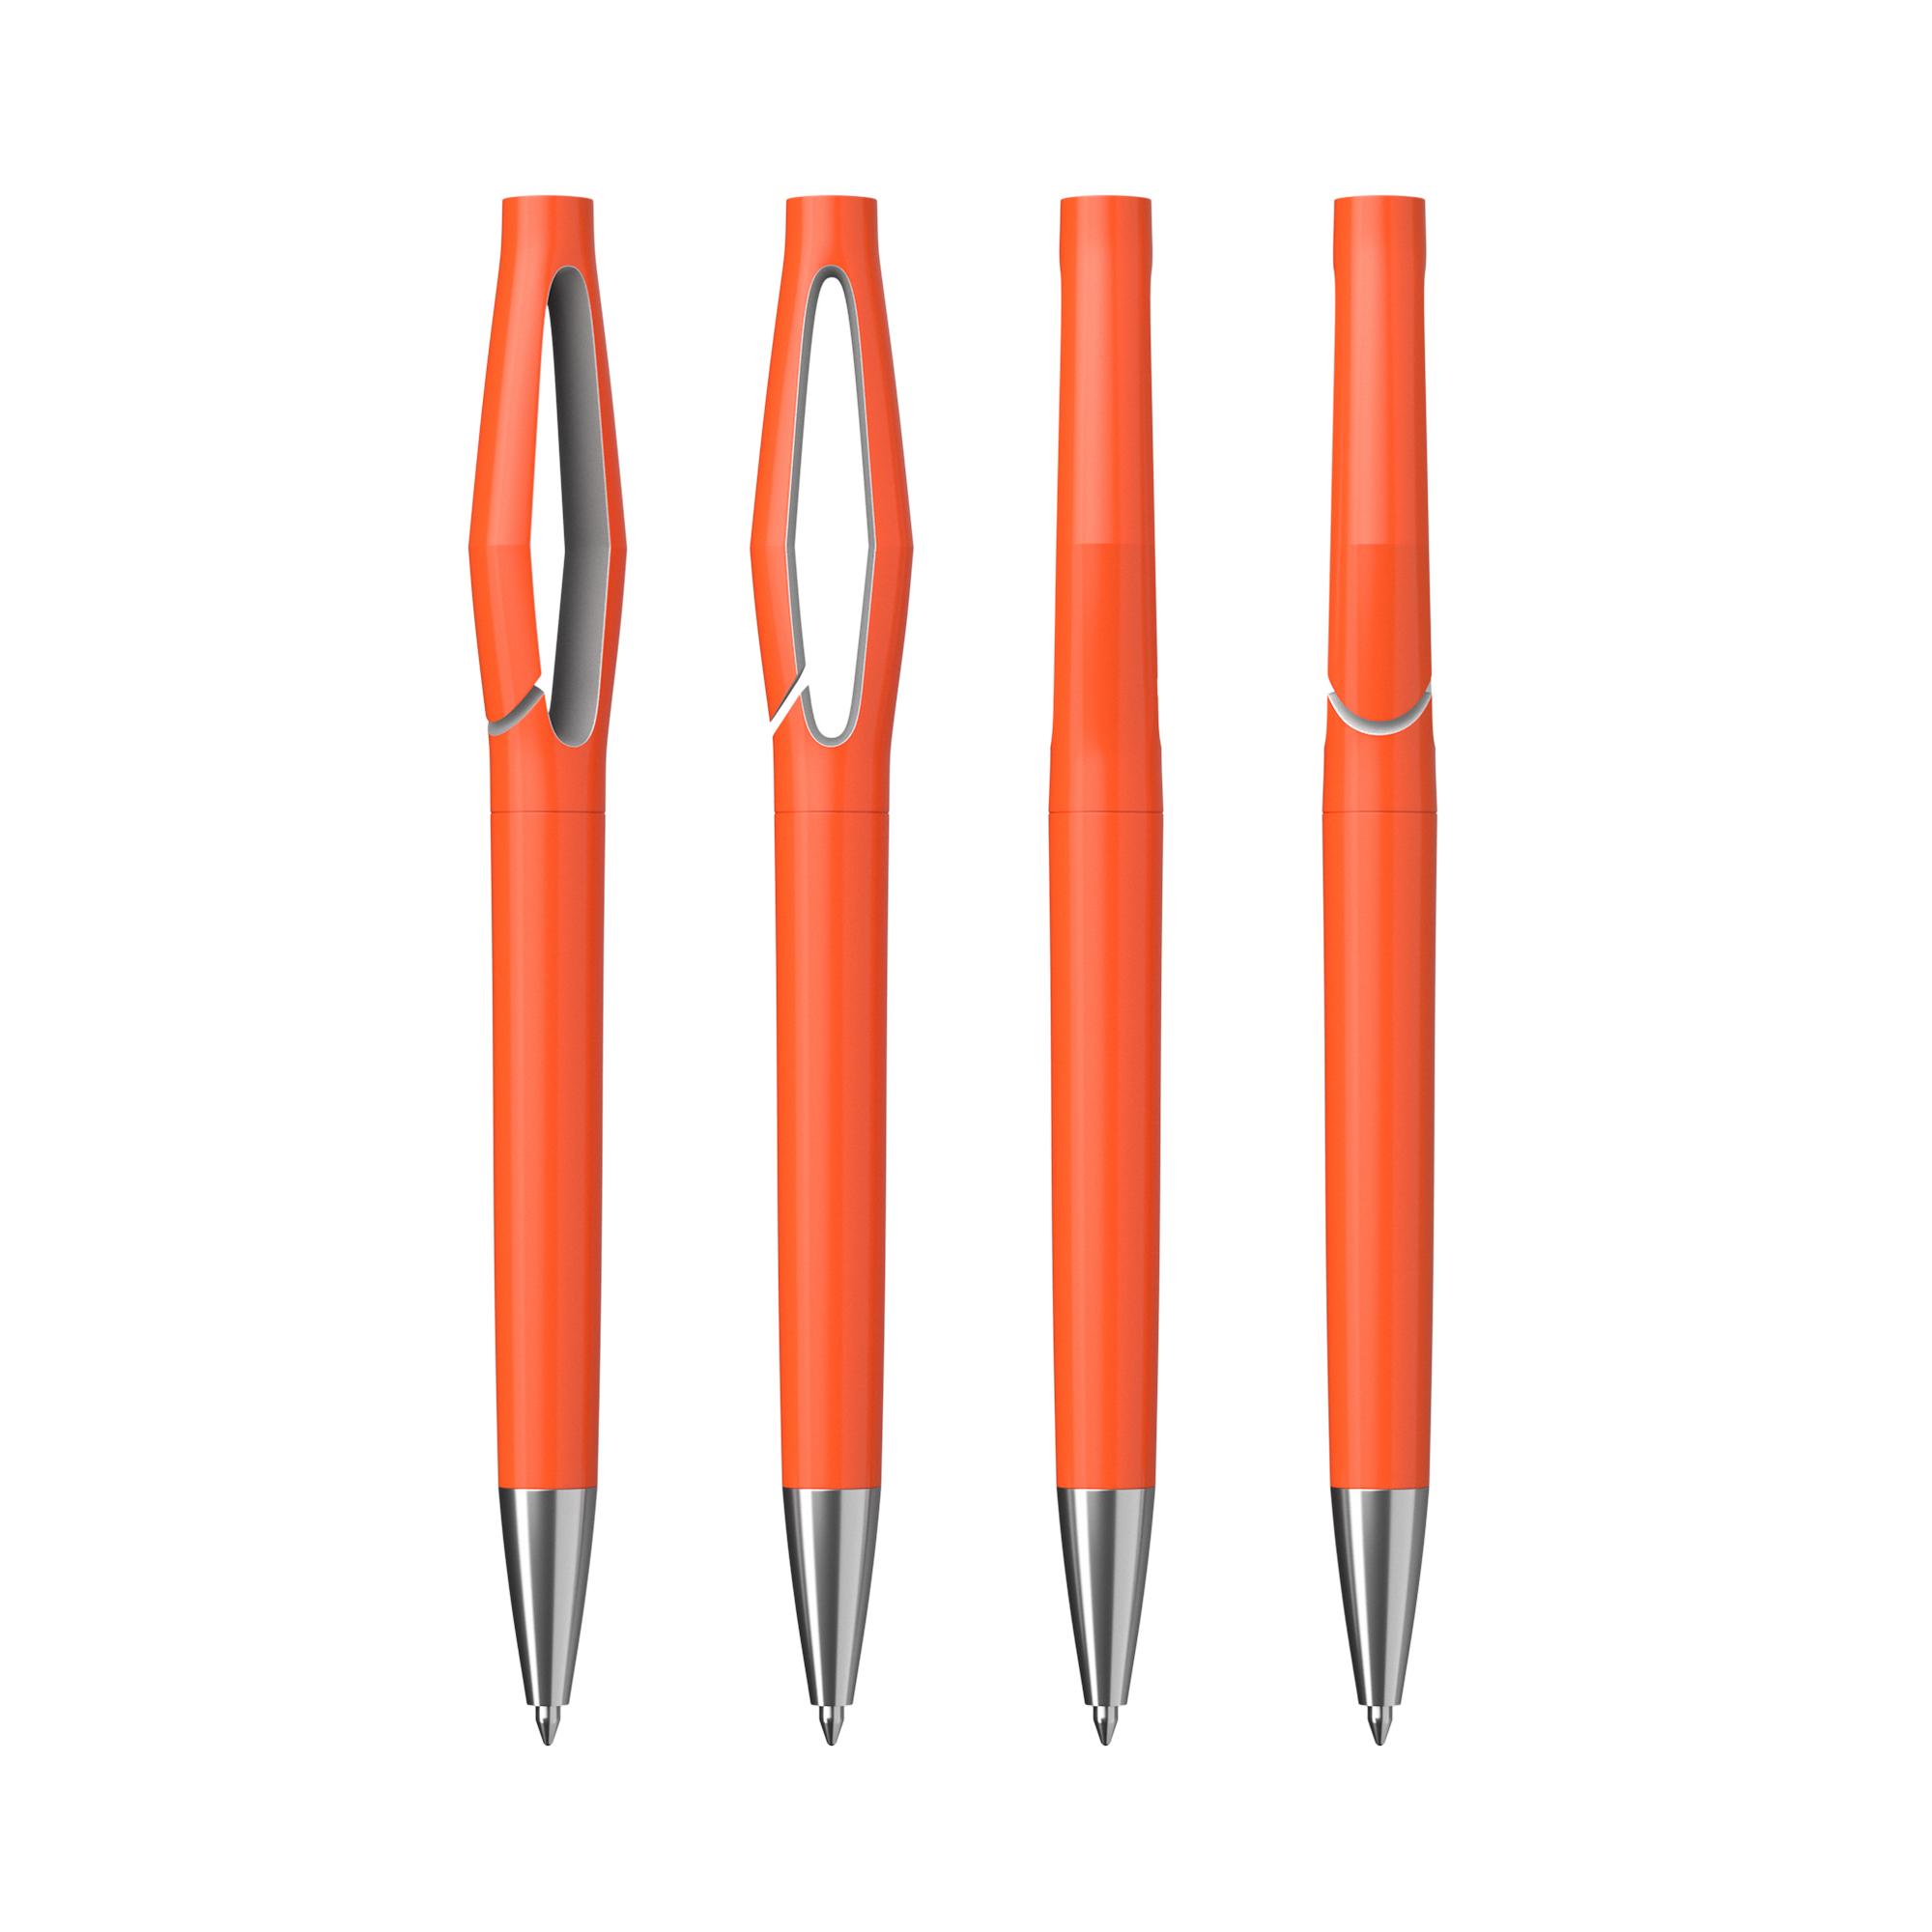 Ручка шариковая "Jack", оранжевый/серебро, цвет оранжевый, фото 2